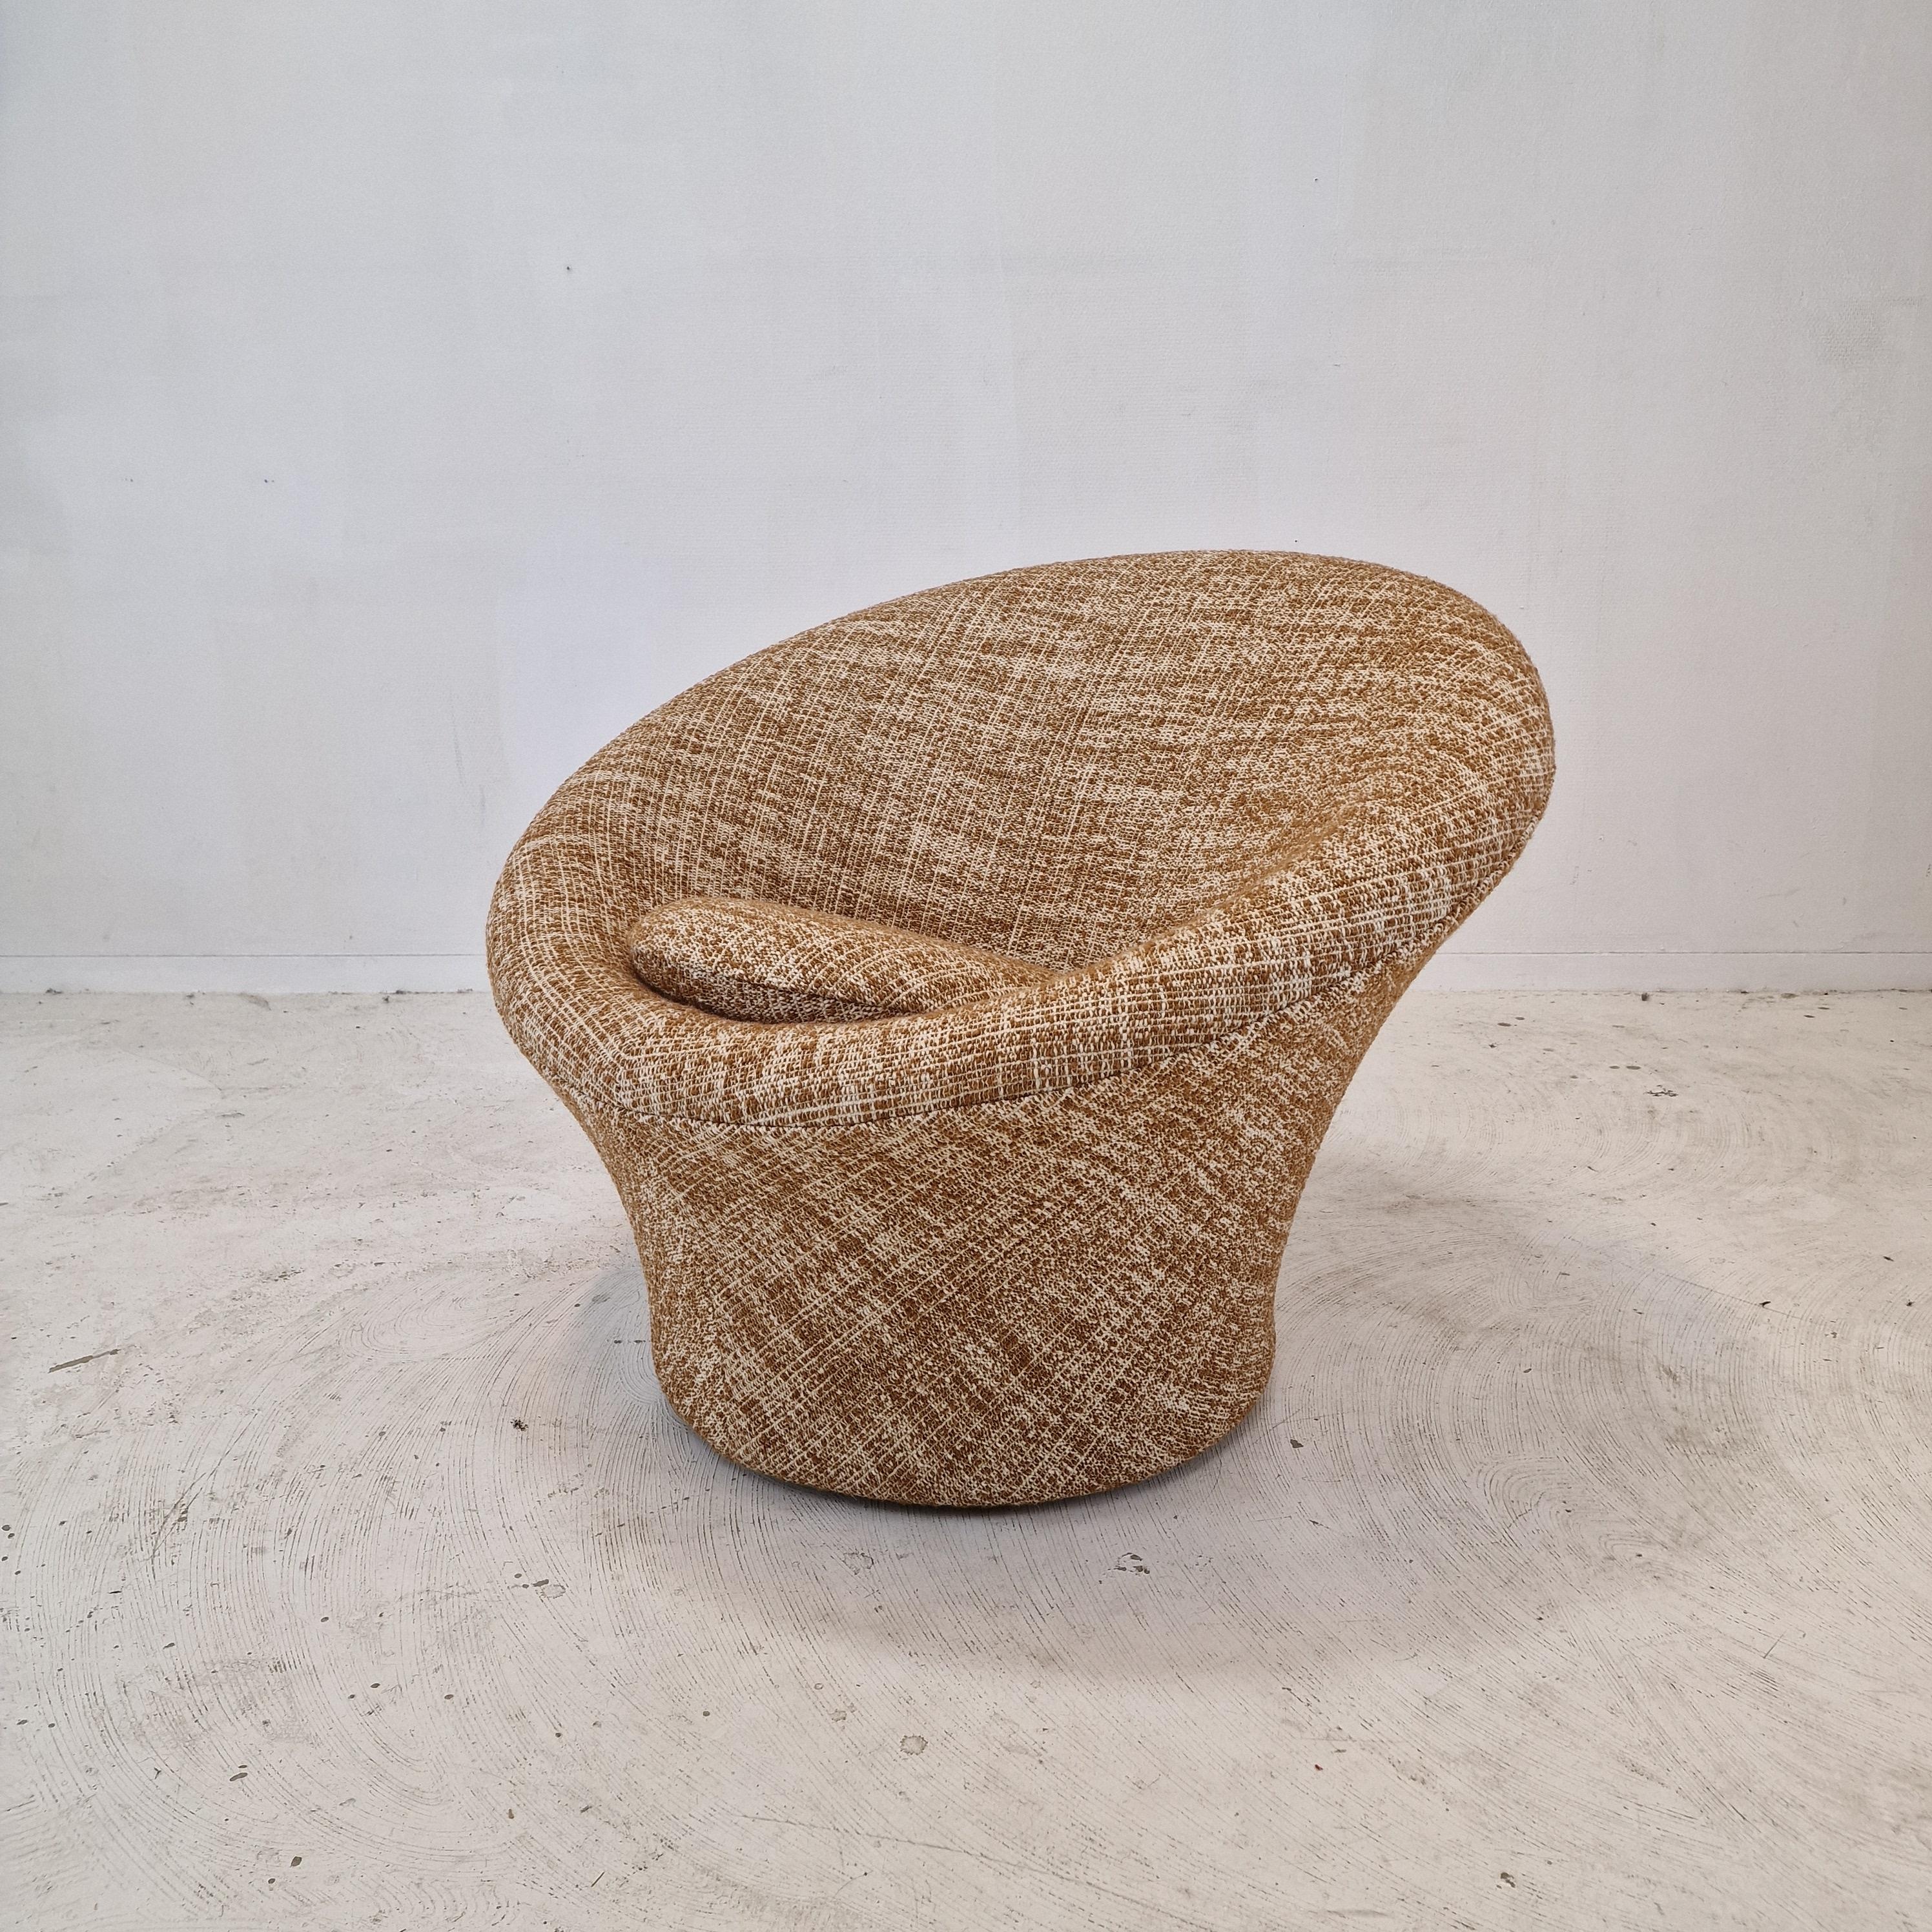 Chaise Artifort Mushroom très confortable et accueillante, conçue par Pierre Paulin dans les années 60. 
Ces chaises sont fabriquées dans les années 80.

Recouvert d'un très beau tissu de laine scandinave.

La chaise est entièrement restaurée avec